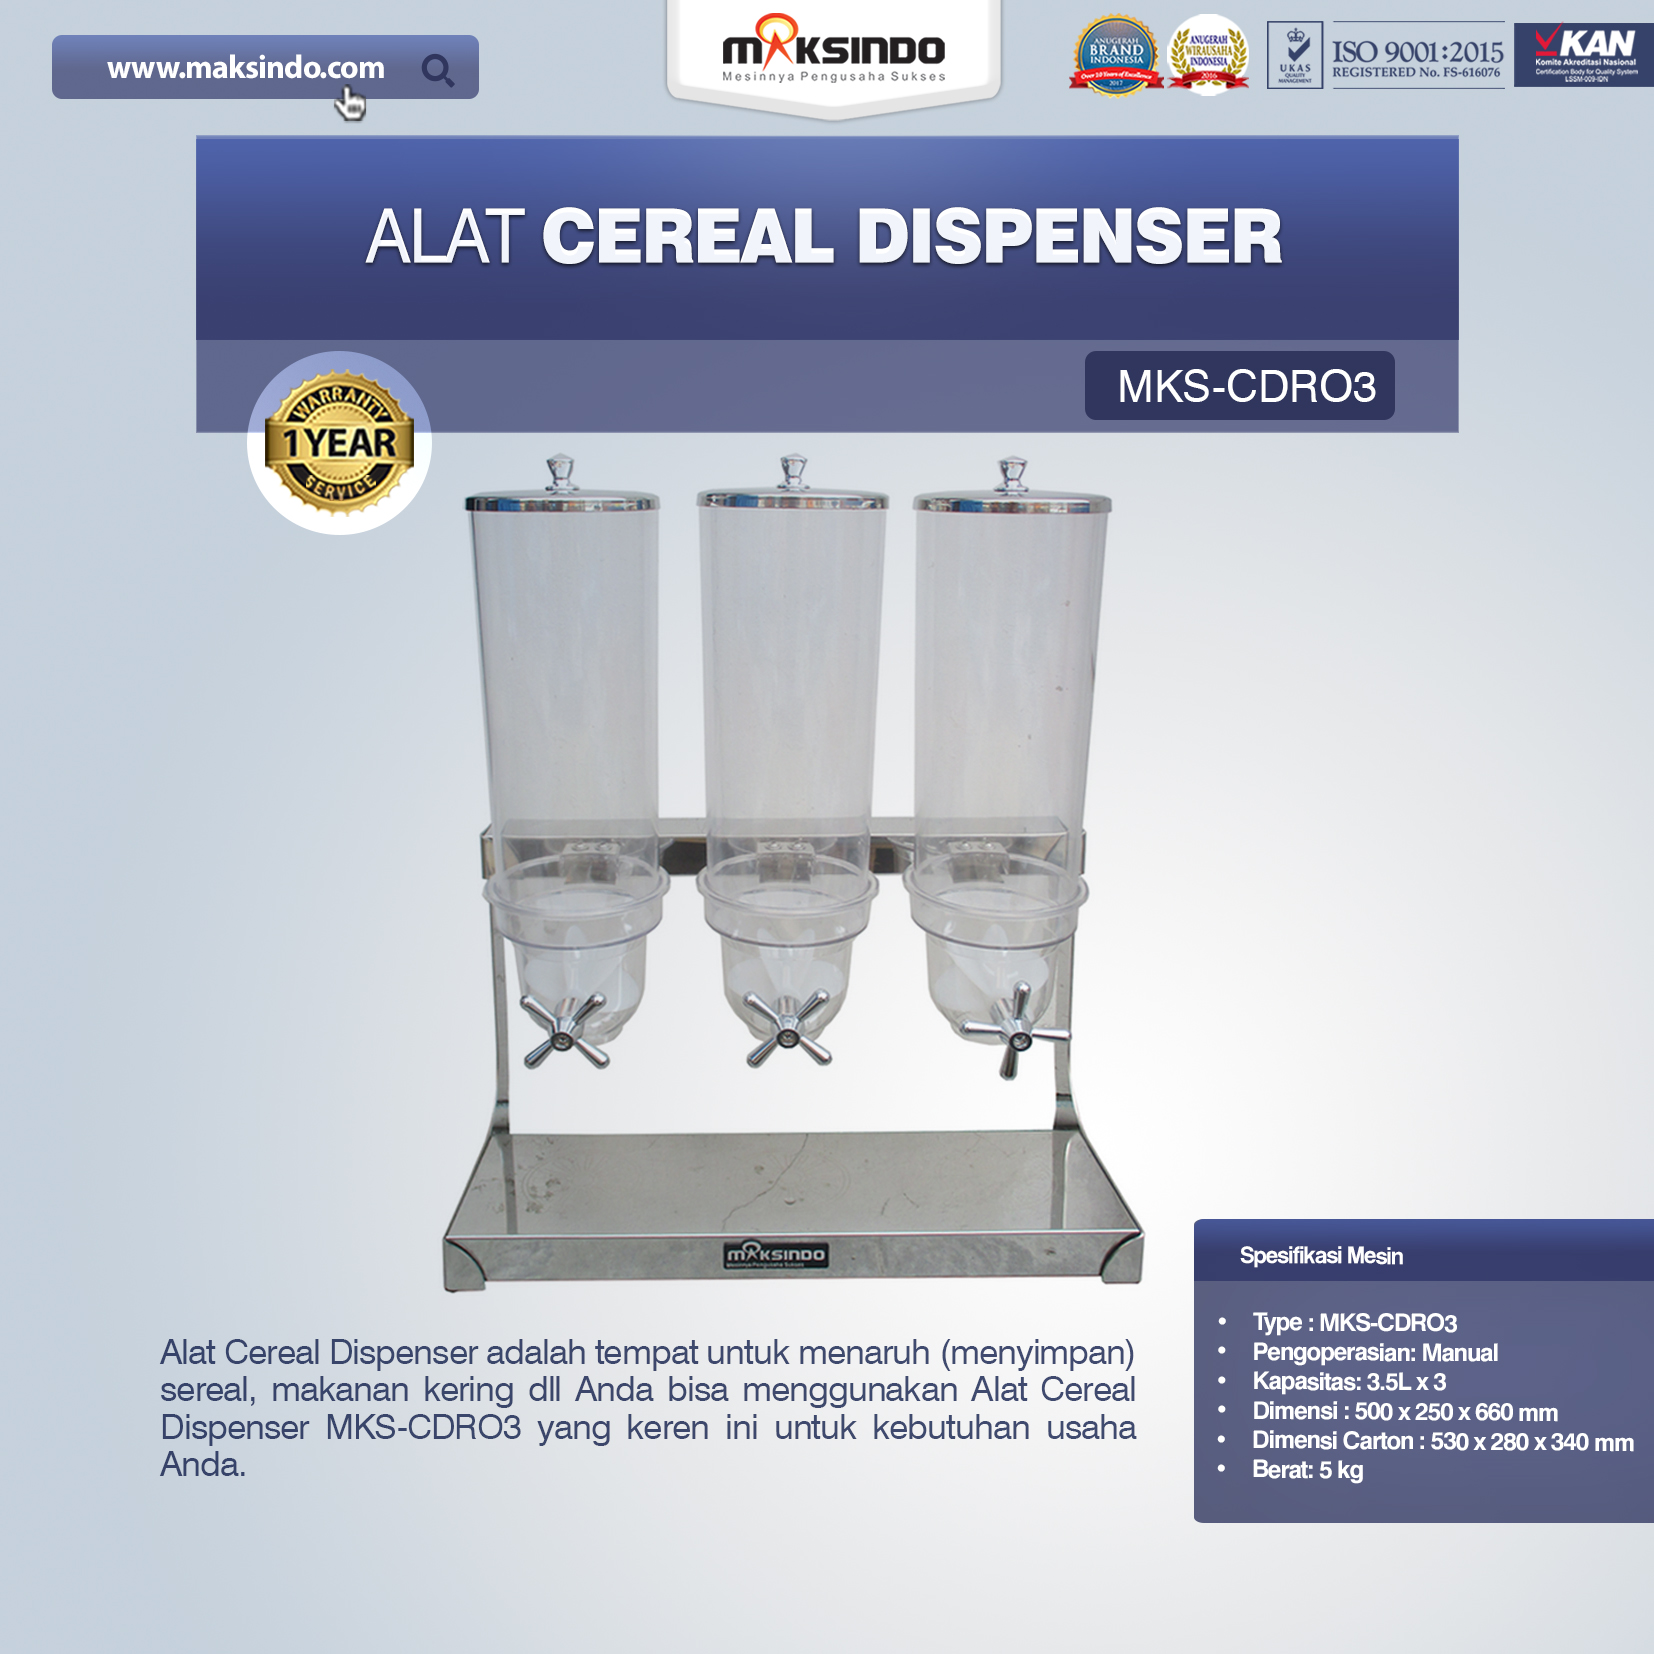 Jual Alat Cereal Dispenser MKS-CDR03 di Bekasi